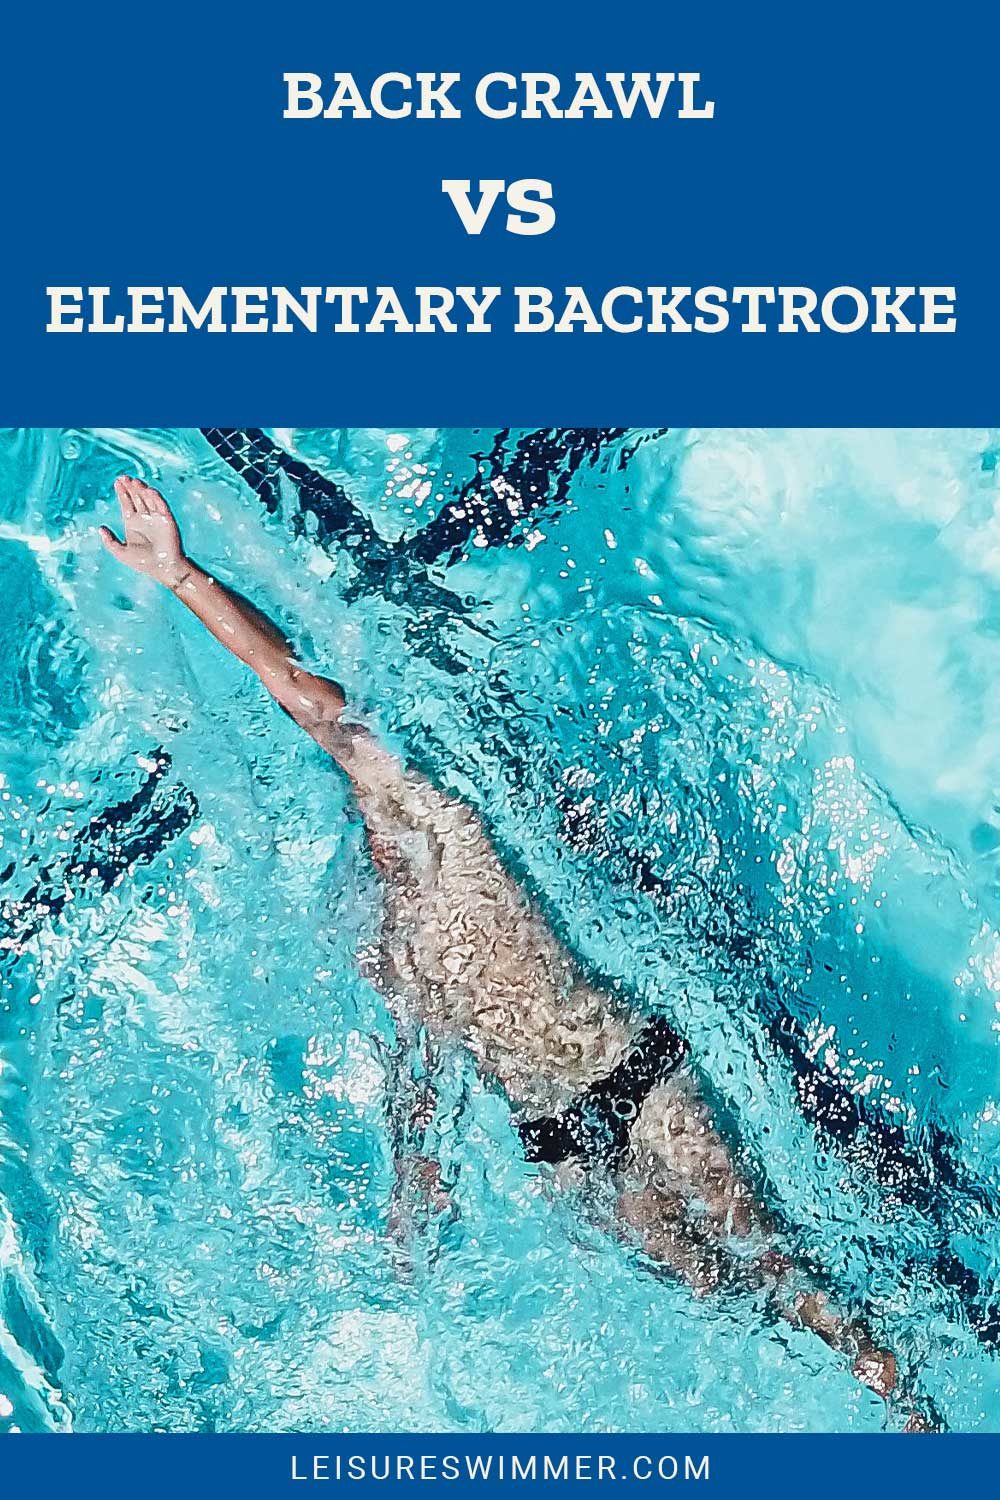 Man trying backstroke under water in a swimming pool - Back Crawl vs. Elementary Backstroke.